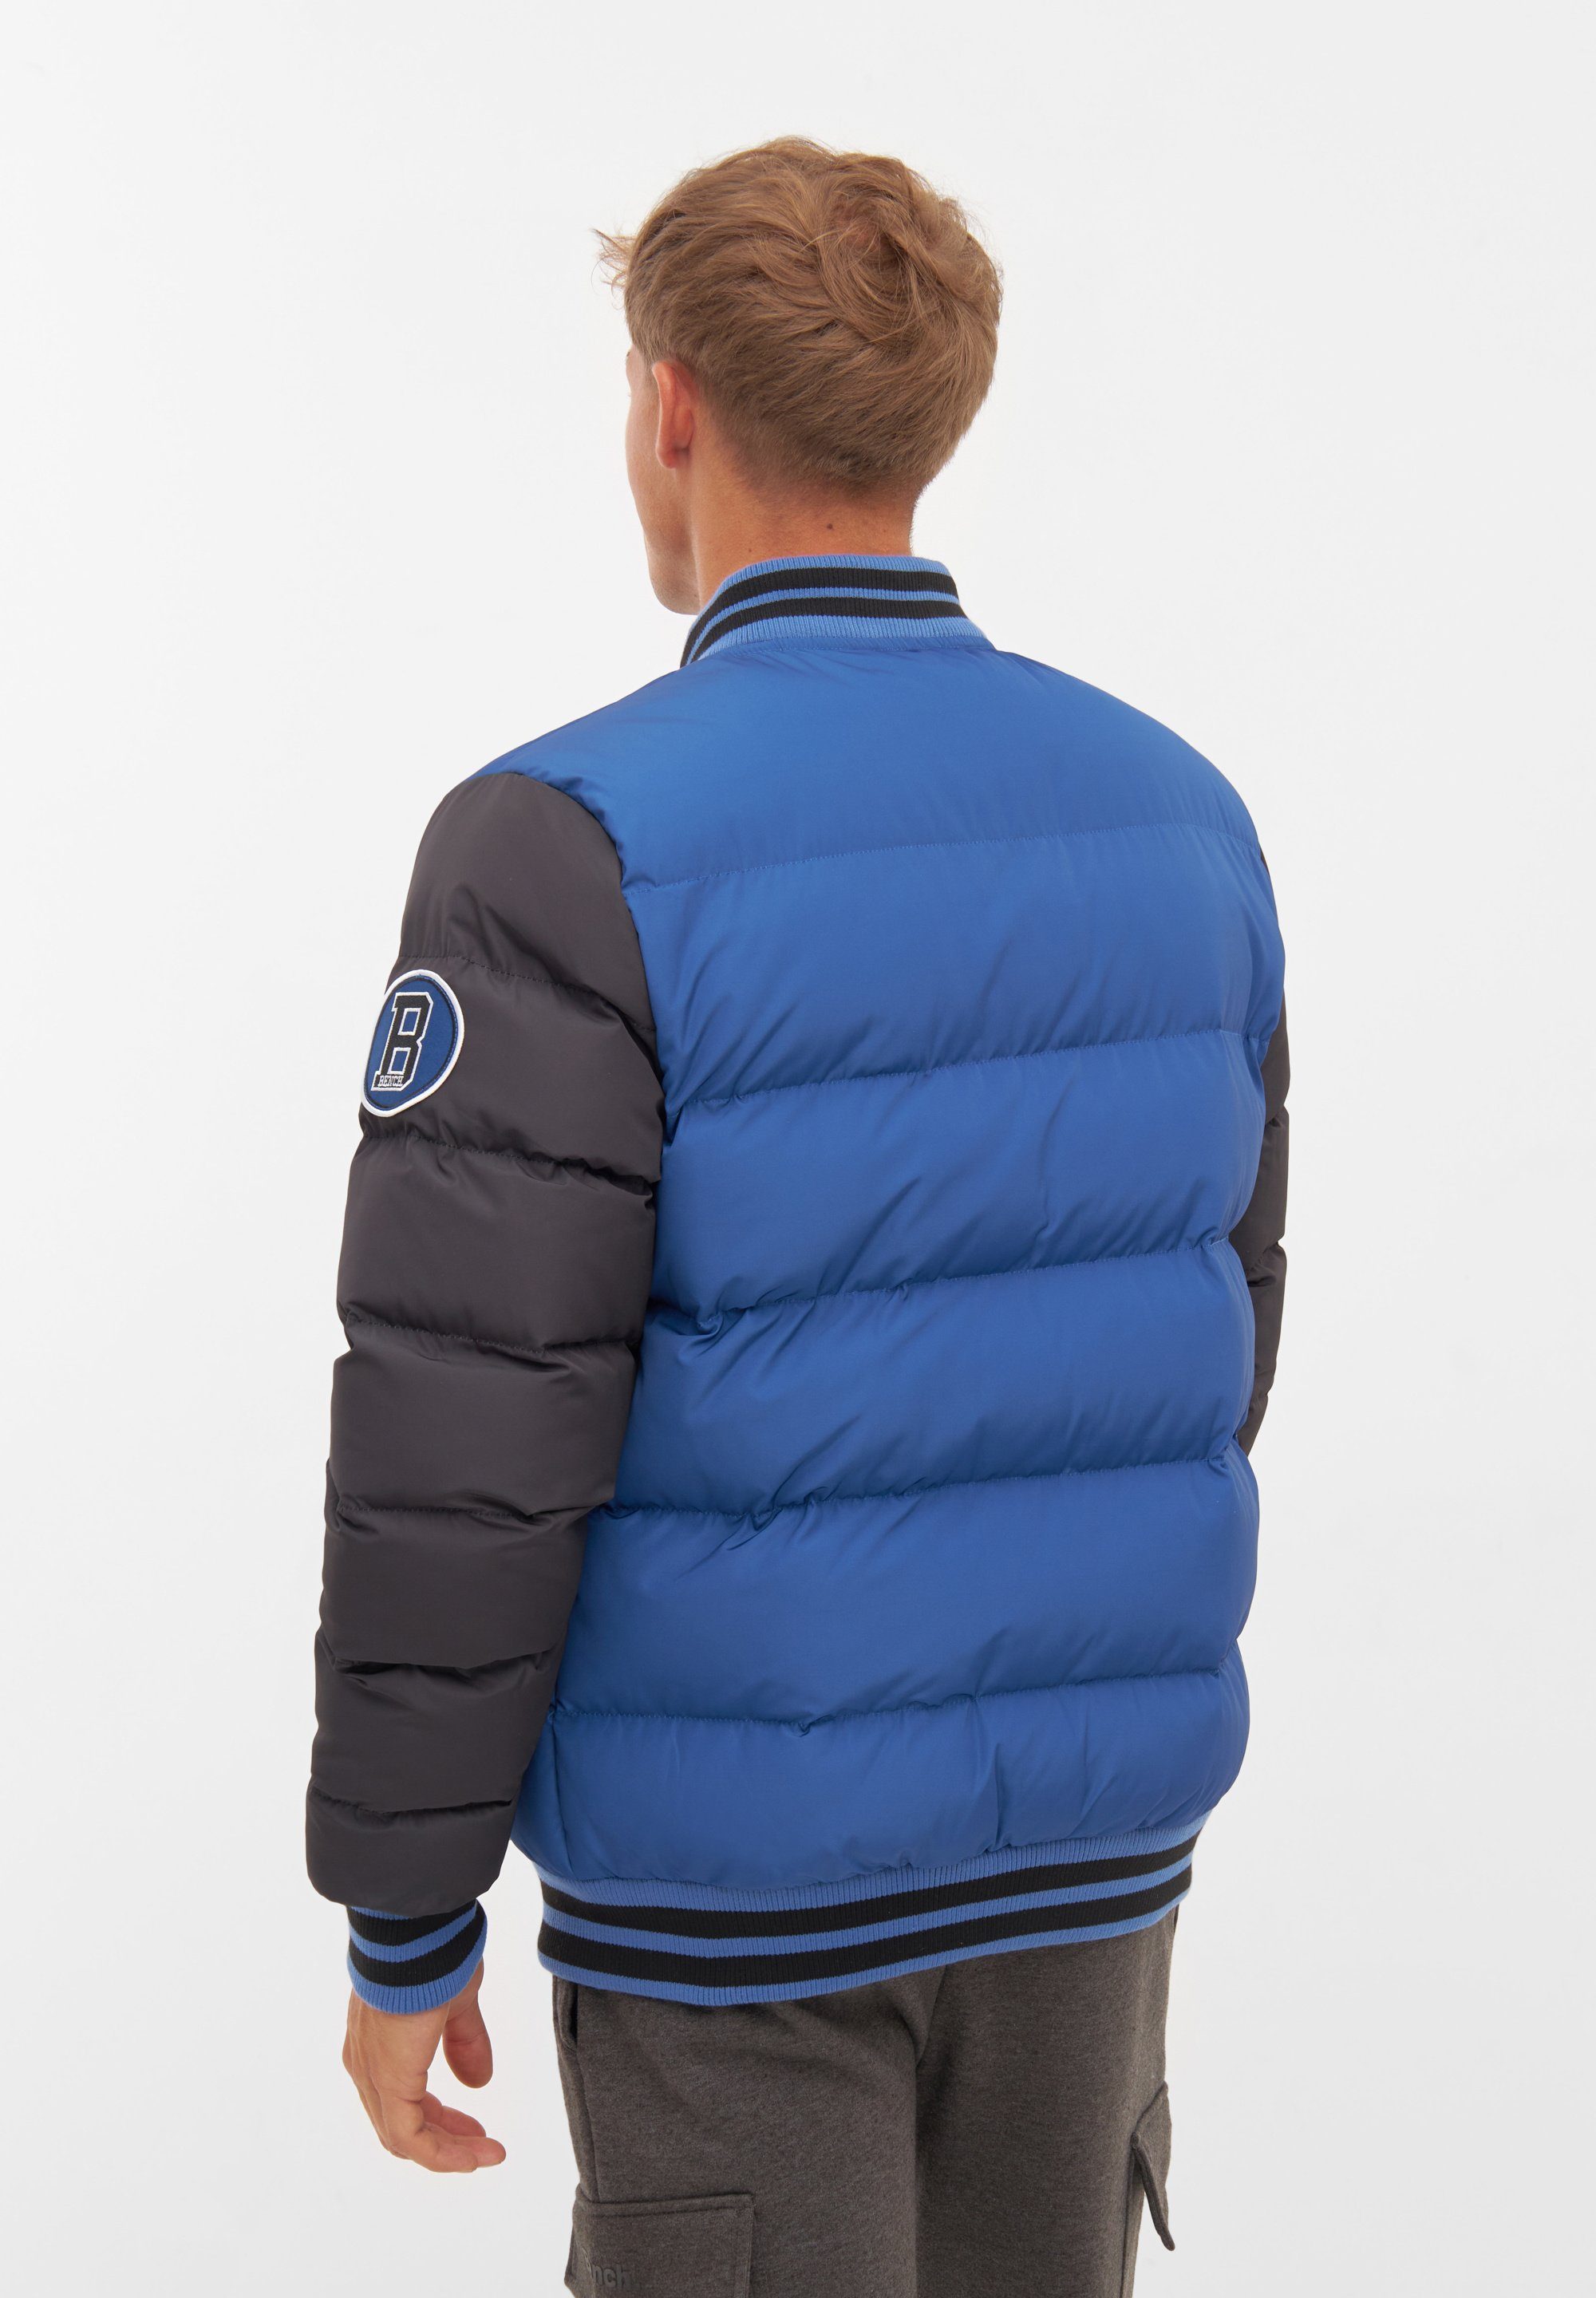 stylische REGGIE Jacke BLACK Winterjacke COBALT / BLUE Bench. und Warme